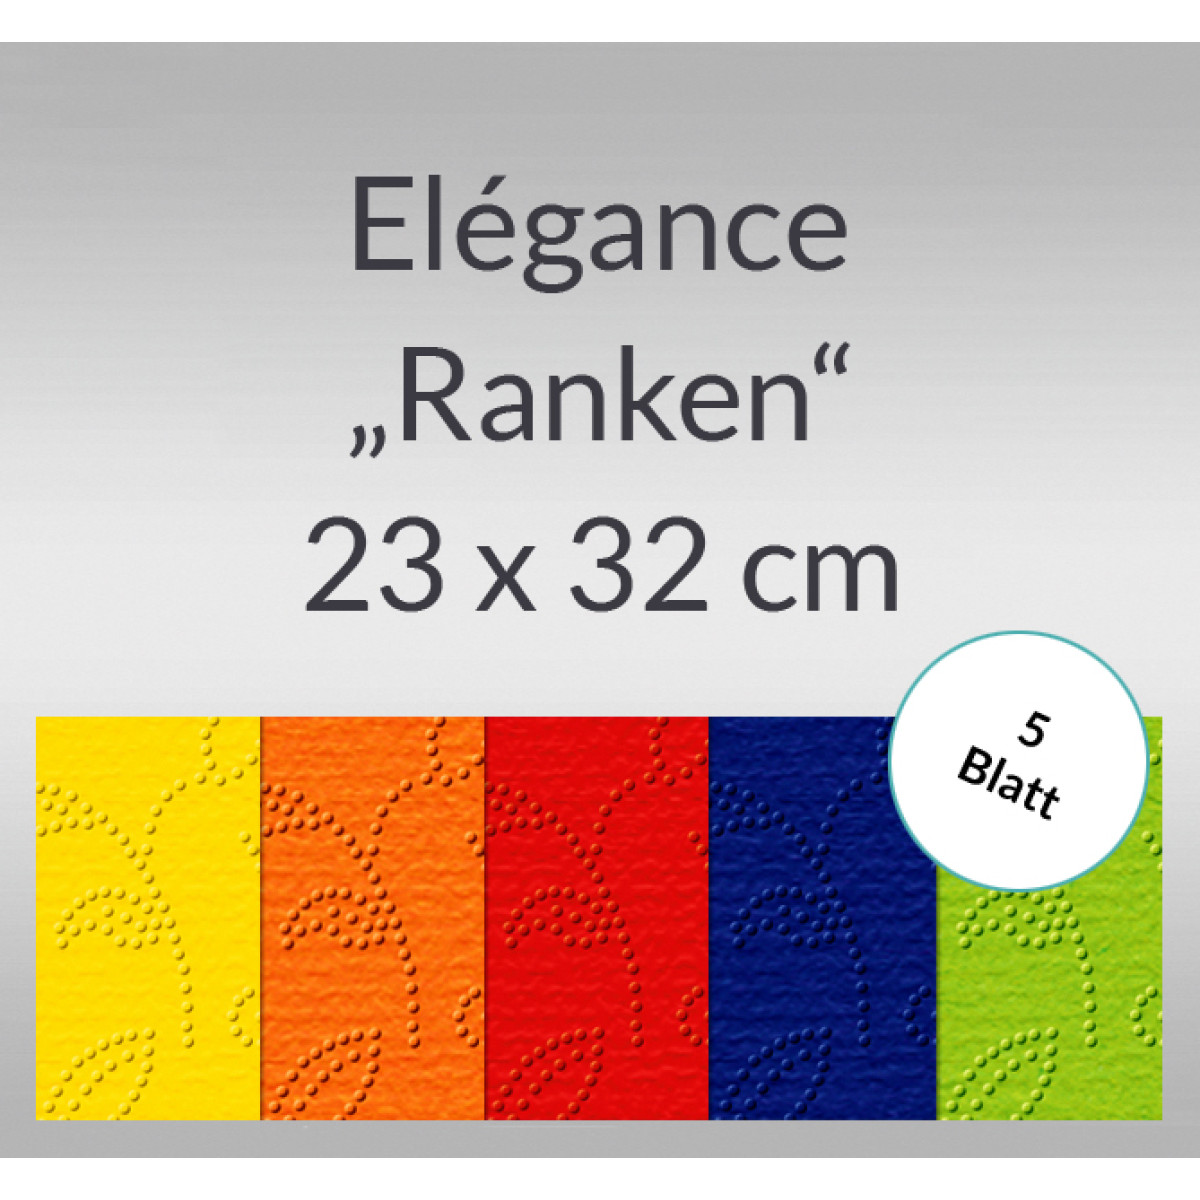 Elegance "Ranken" 220 g/qm 23 x 32 cm - 5 Blatt